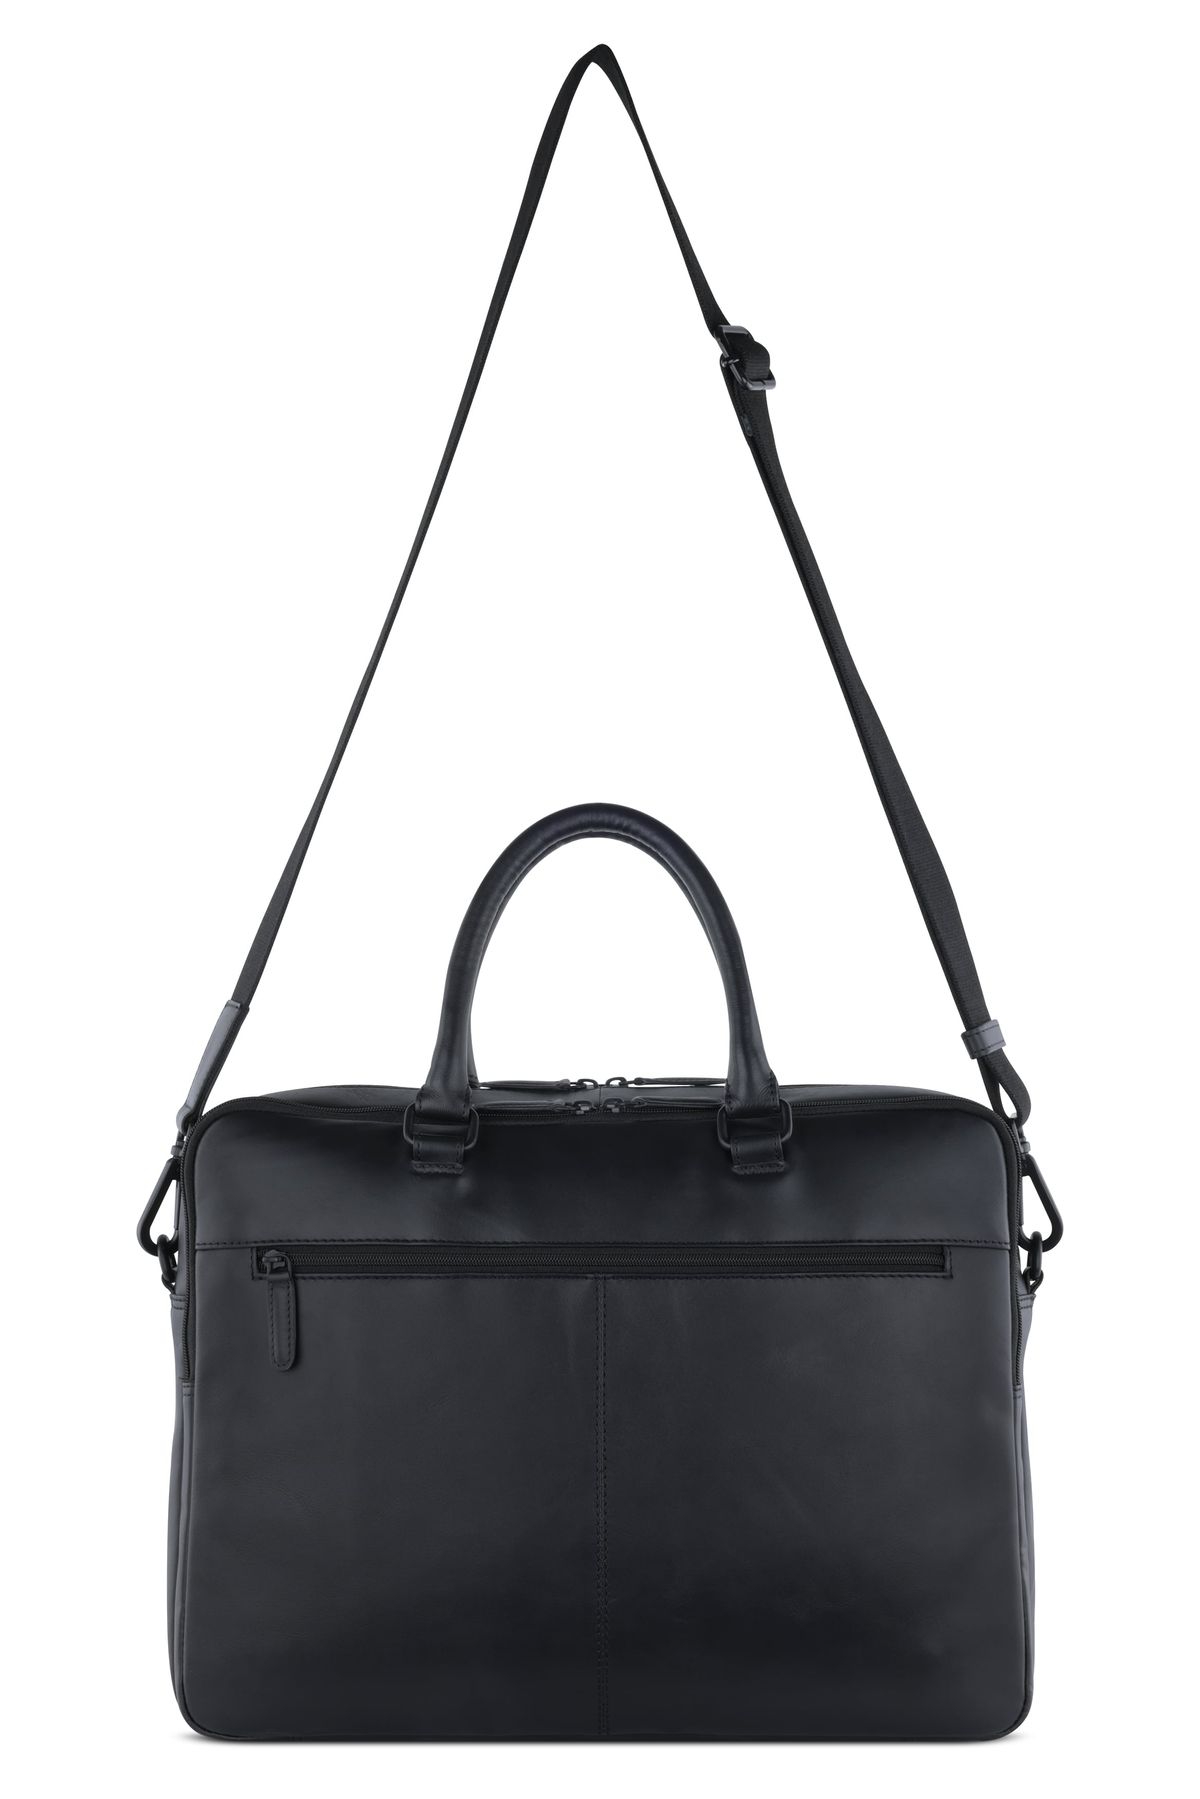 Мужская сумка-портфель кожаная Bugatti CLARK 49235301 Черный One Size